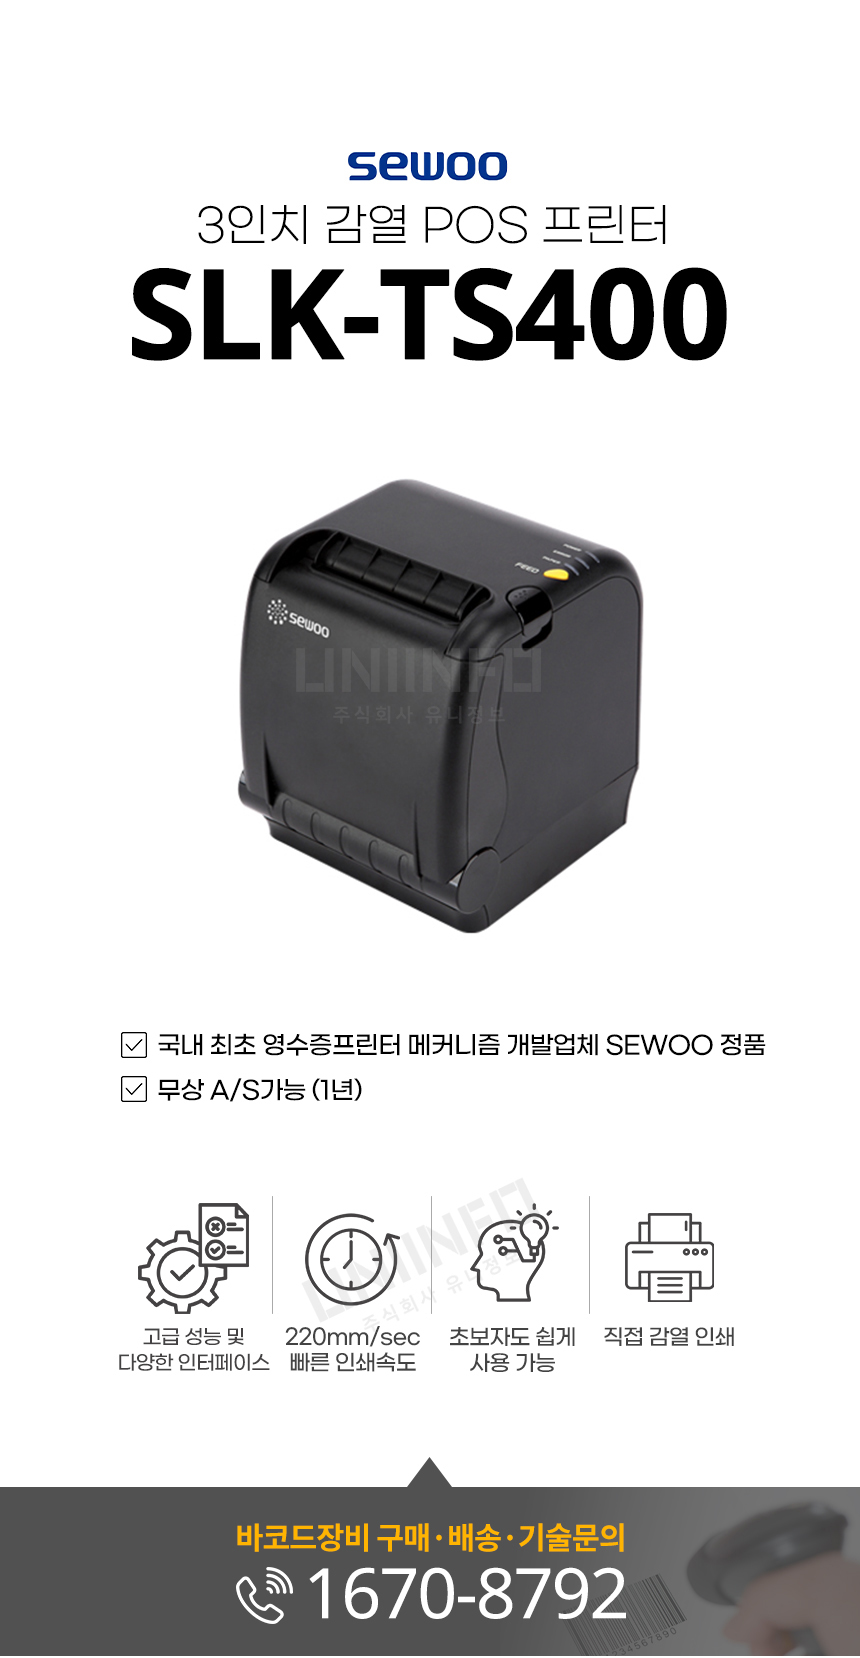 sewoo 3인치 감열 pos 프린터 slk-ts400 고성능 다양한 인터페이스 220mm/sec 빠른 인쇄속도 직접감열방식